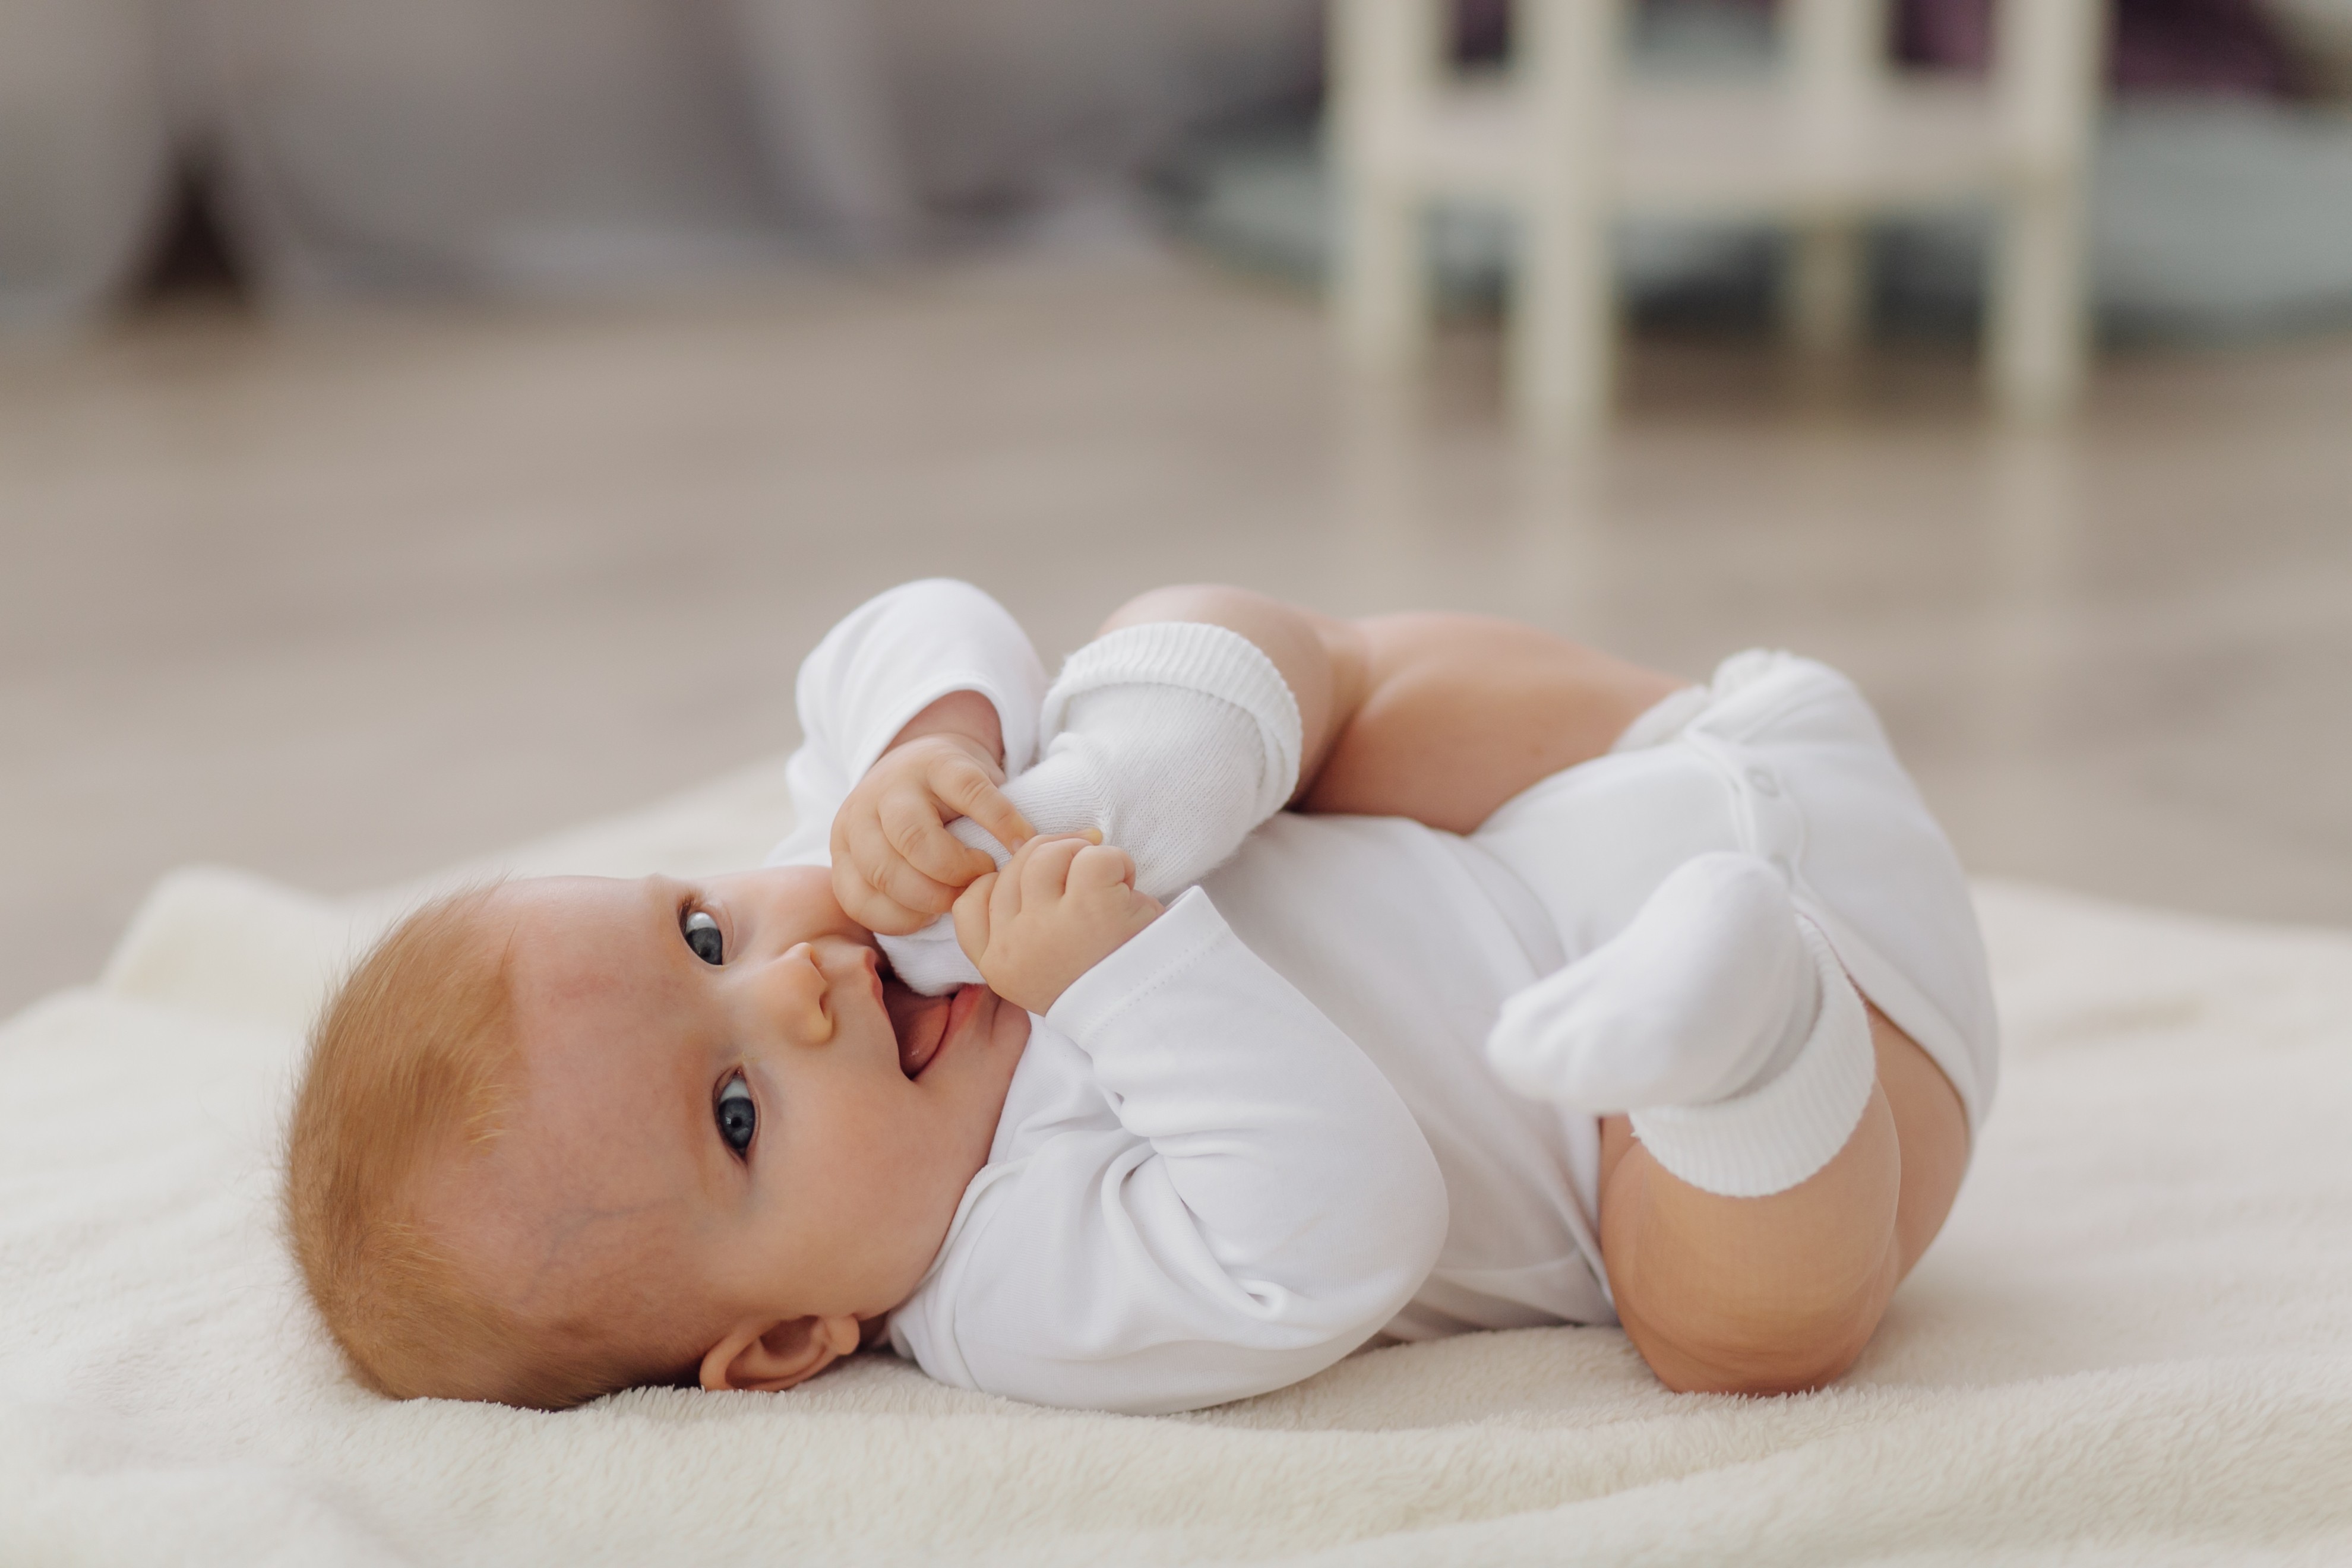 Boostez votre production de lait maternel : astuces pratiques et efficaces pour favoriser l'allaitement